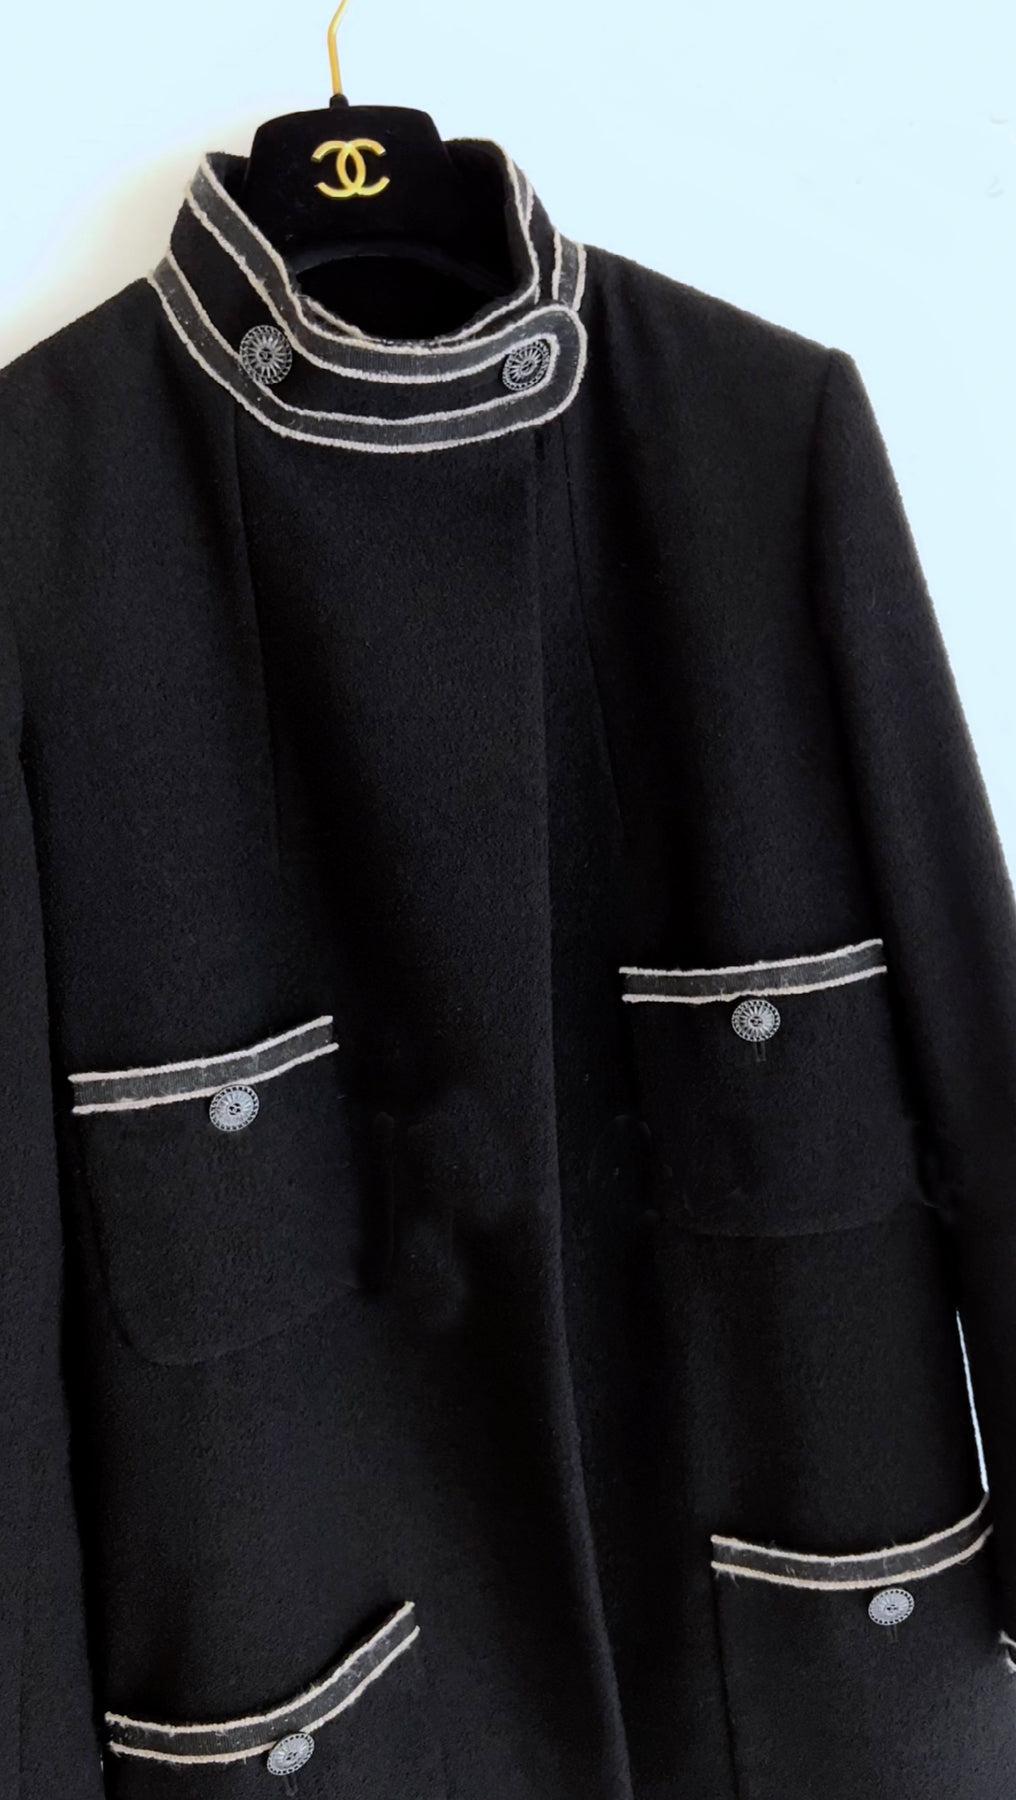 Chanel Paris / Singapore Black Tweed Coat 1